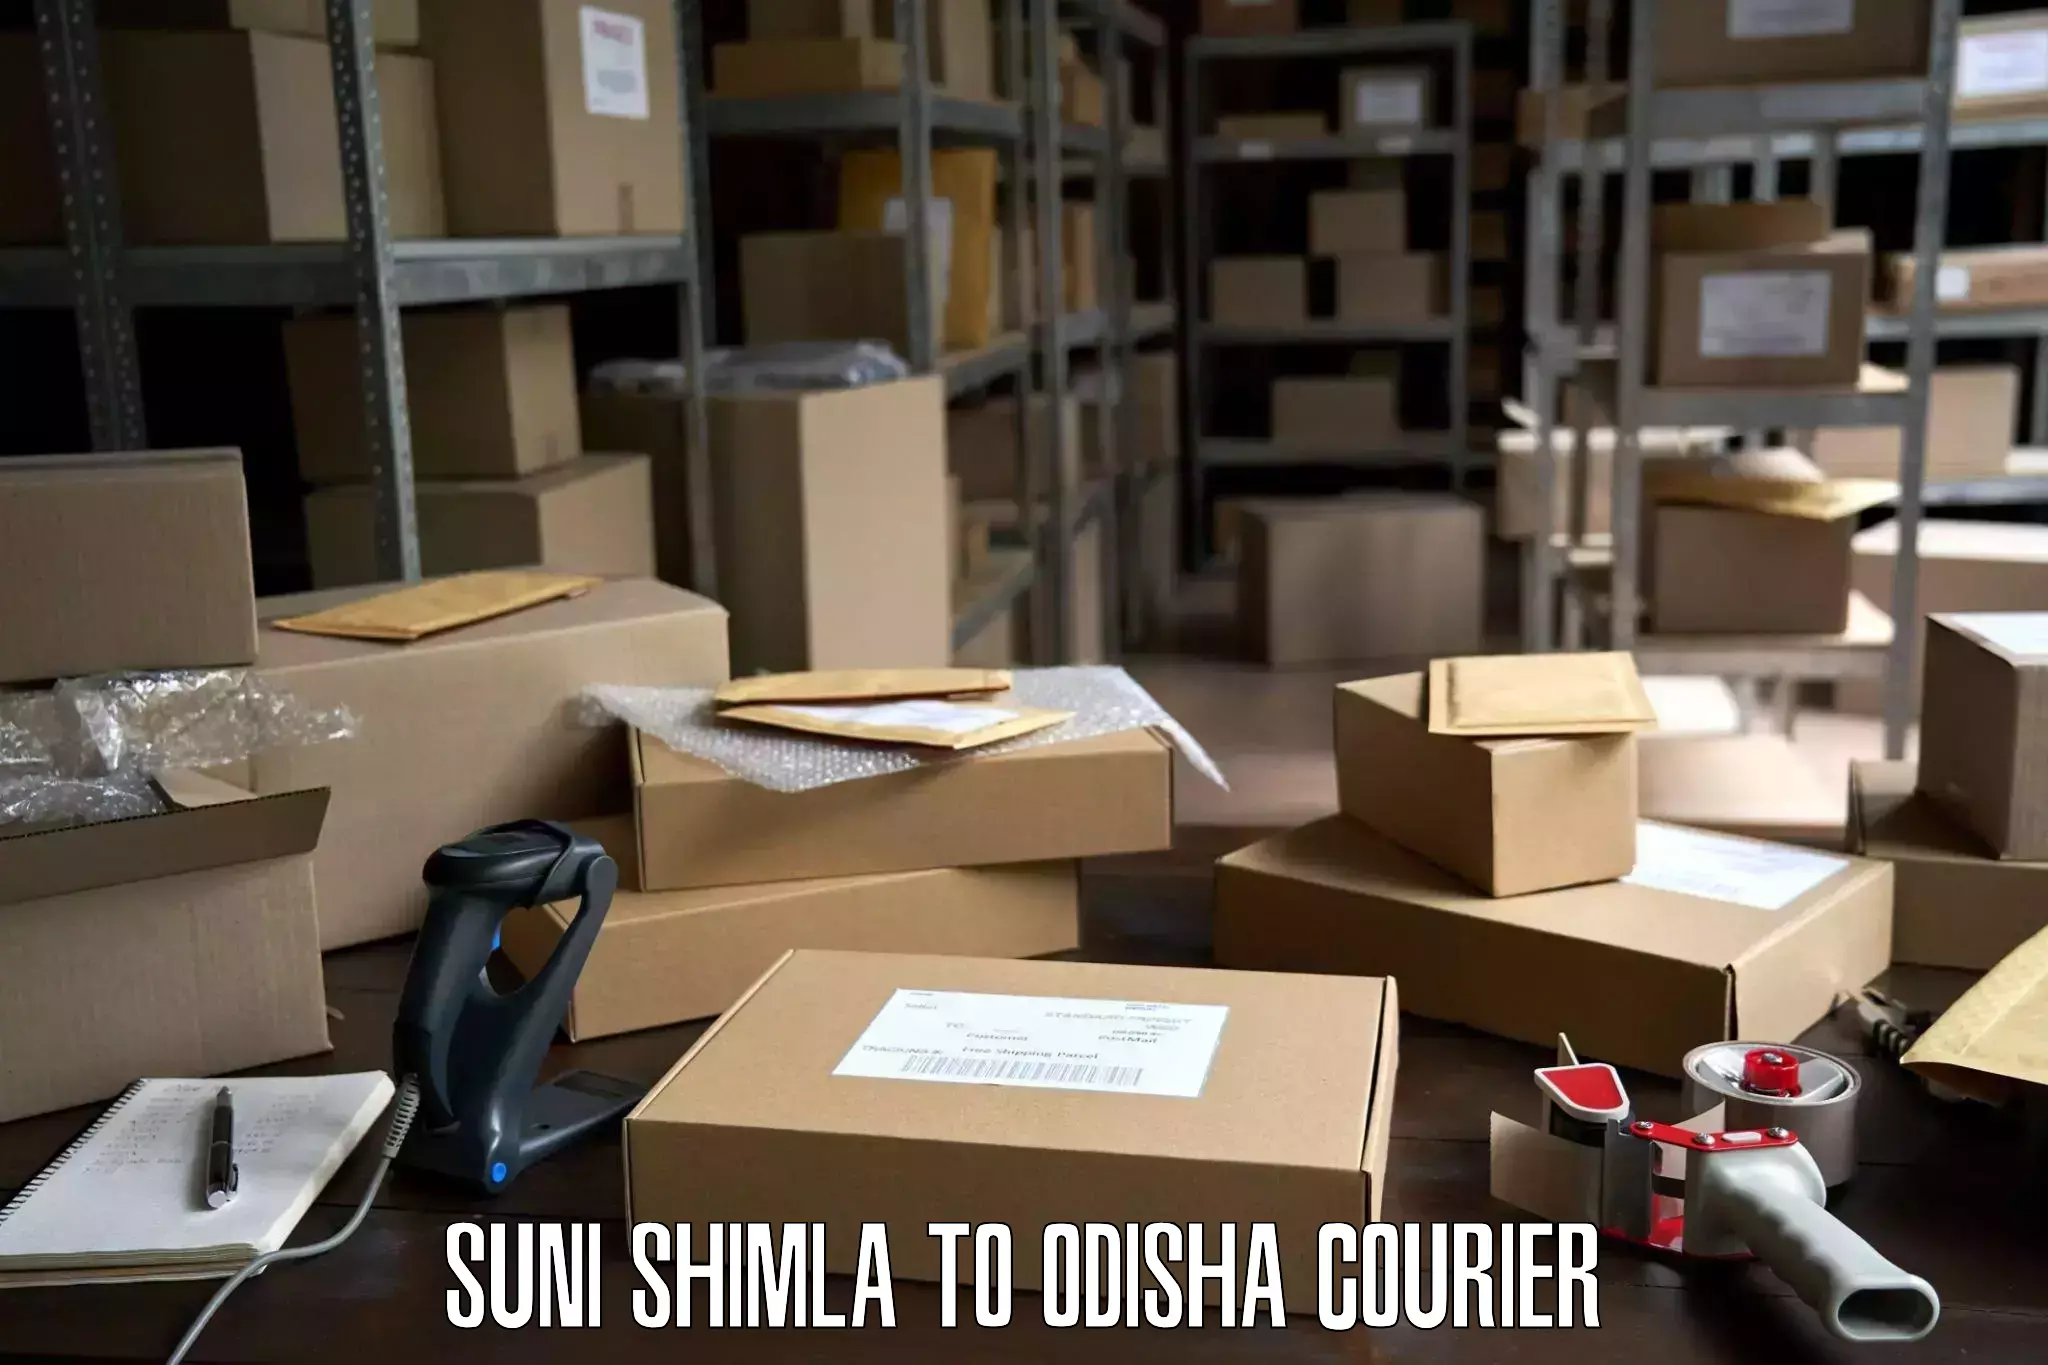 Furniture logistics Suni Shimla to Kupari